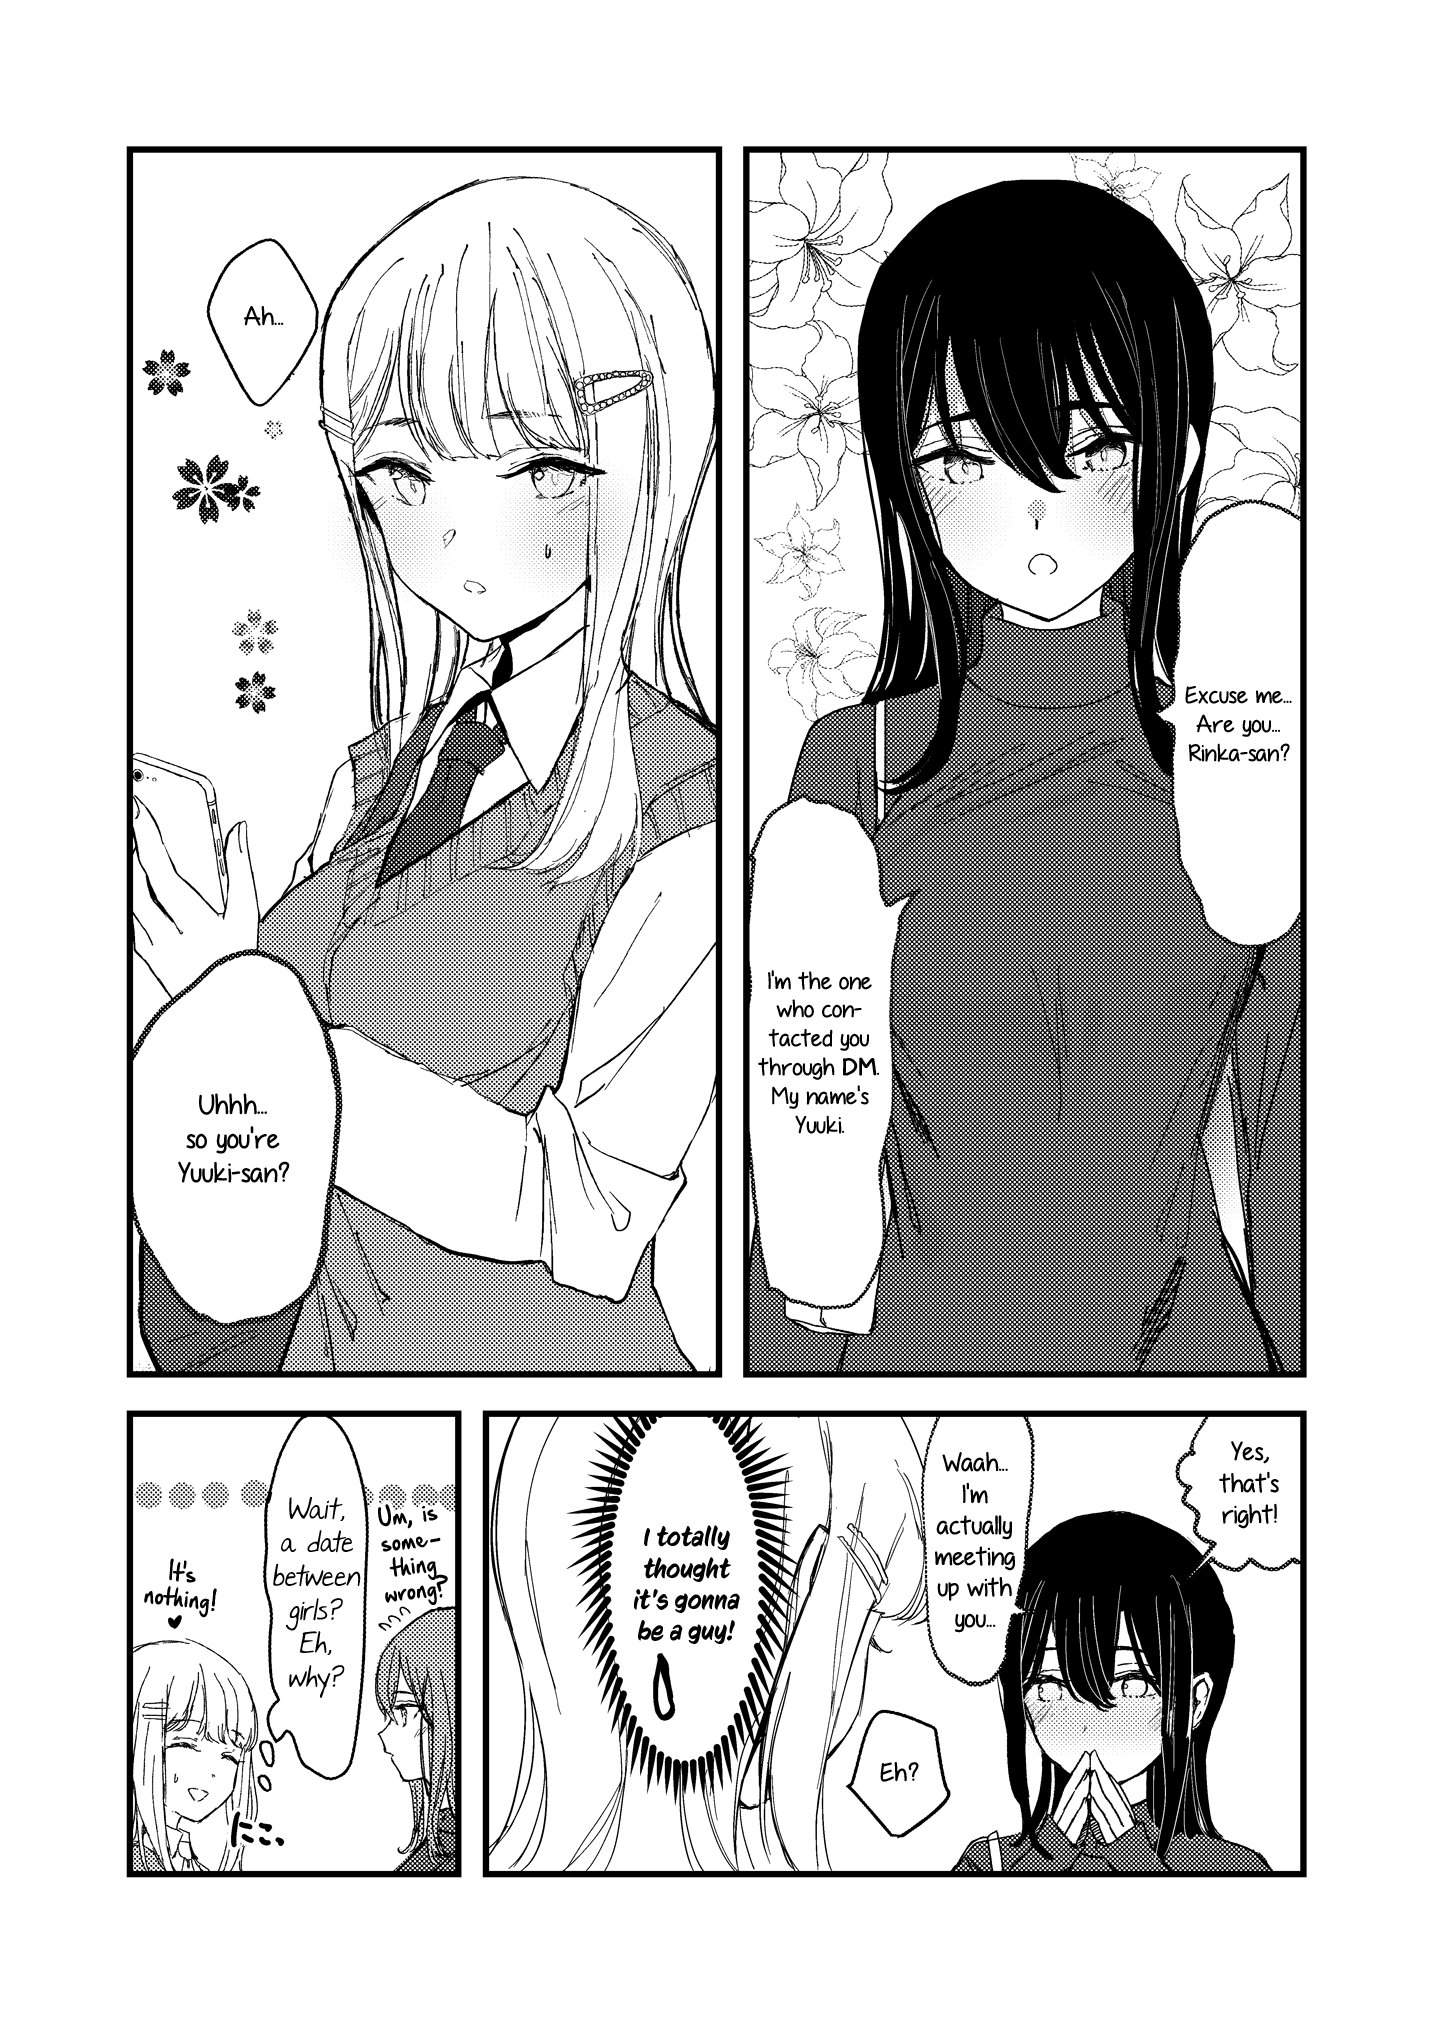 Dynasty Reader » I Might Her | Yuri Manga & Amino